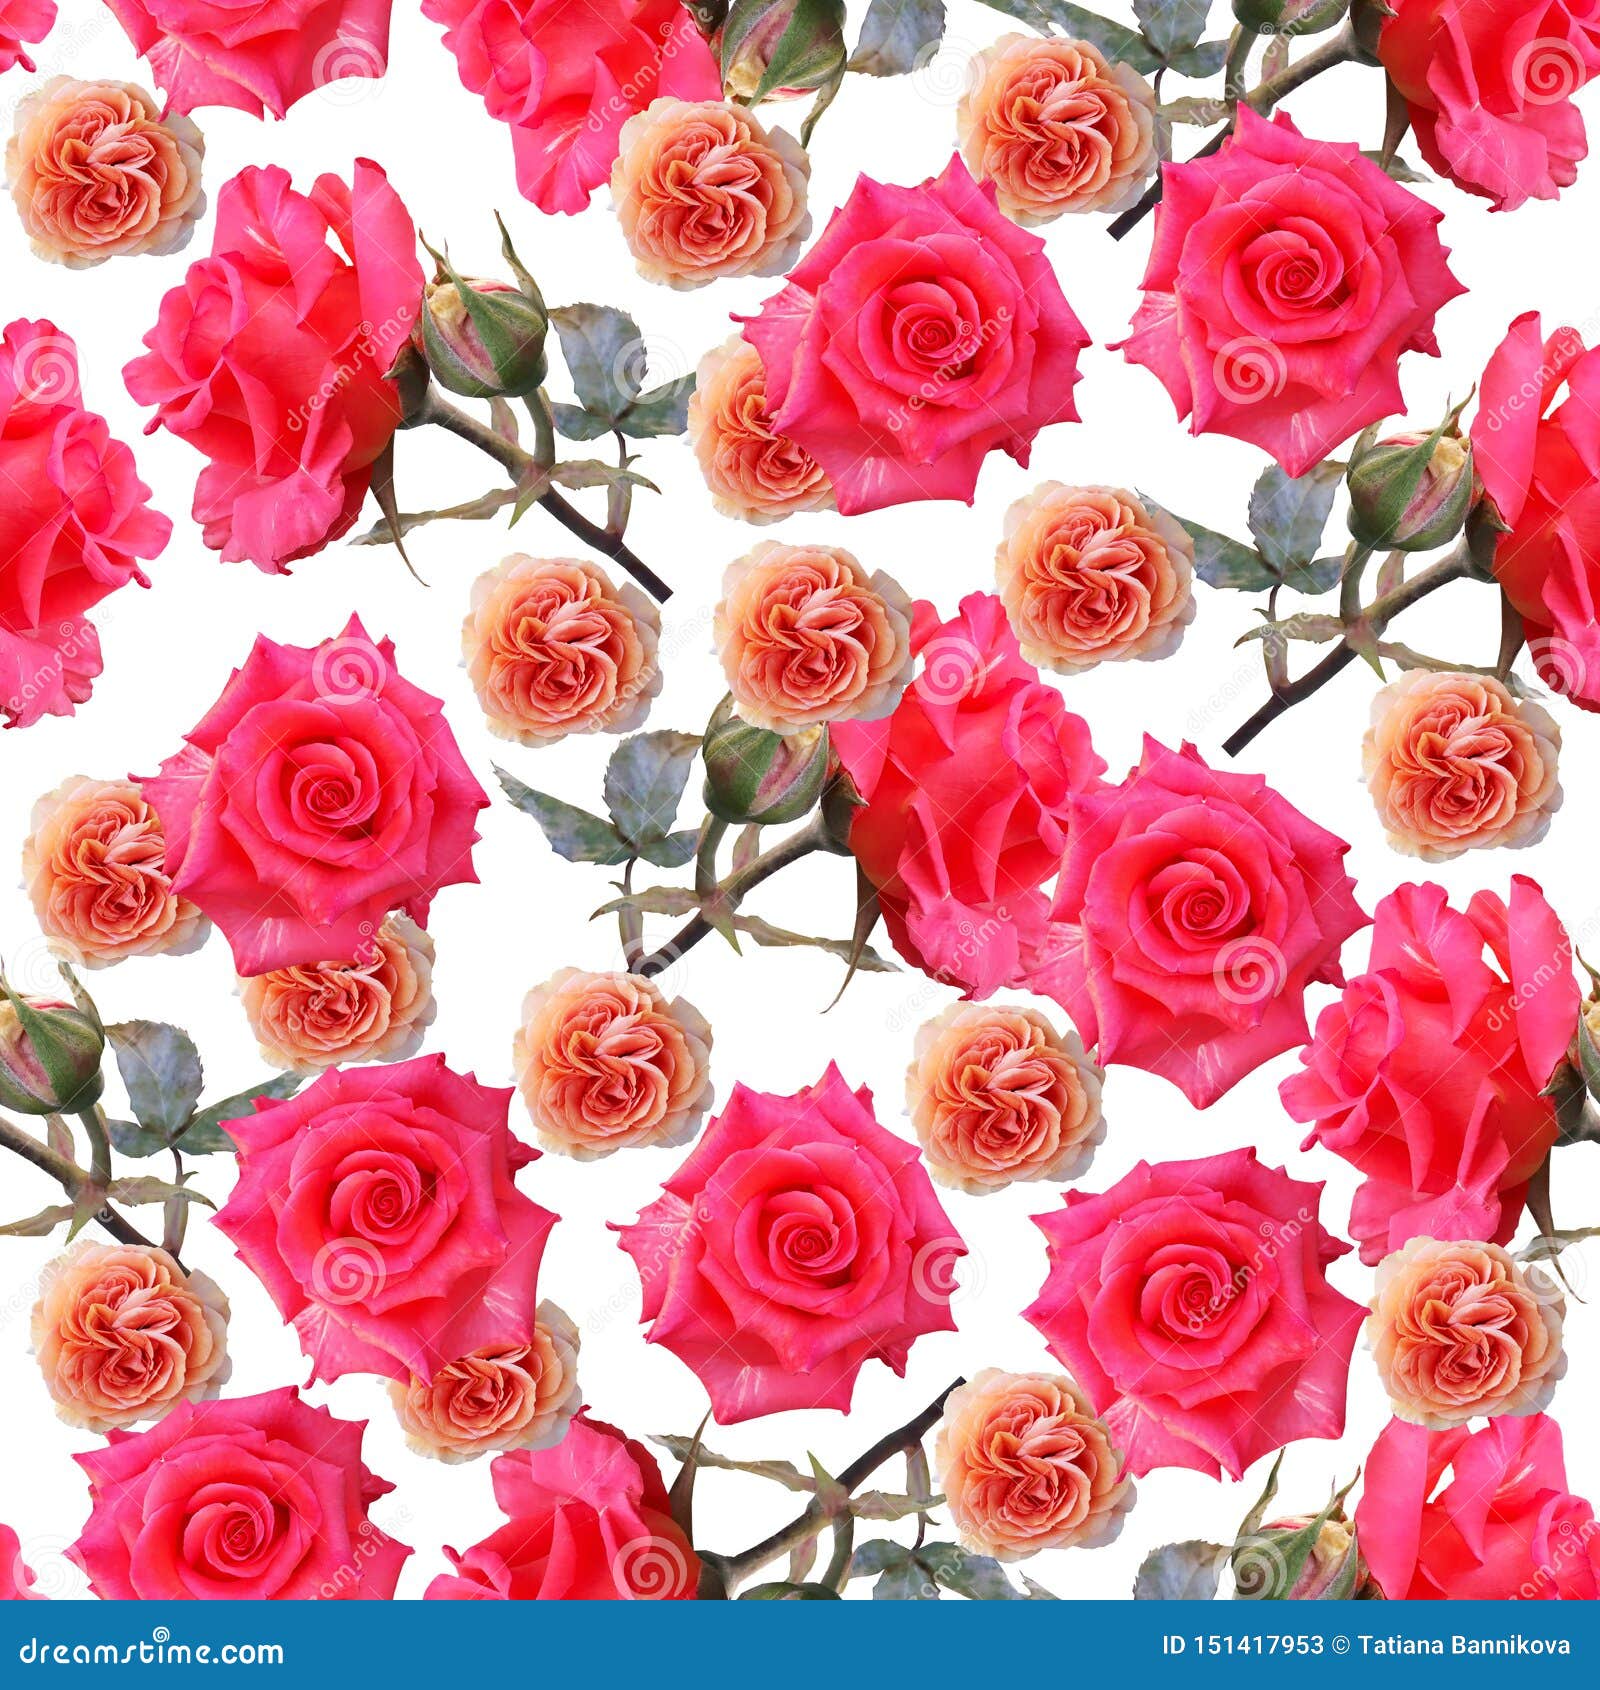 Nếu bạn đang tìm kiếm một hình nền hoa hồng đa màu sắc và đáng yêu, hãy đến đúng nơi rồi đó. Các hình nền được thiết kế với nhiều màu sắc, mang đến cho bạn sự phong phú trong lựa chọn. Bạn có thể dùng chúng để trang trí cho điện thoại hoặc máy tính, hay sử dụng cho các thiết kế poster của bạn. Hãy thử ngay!